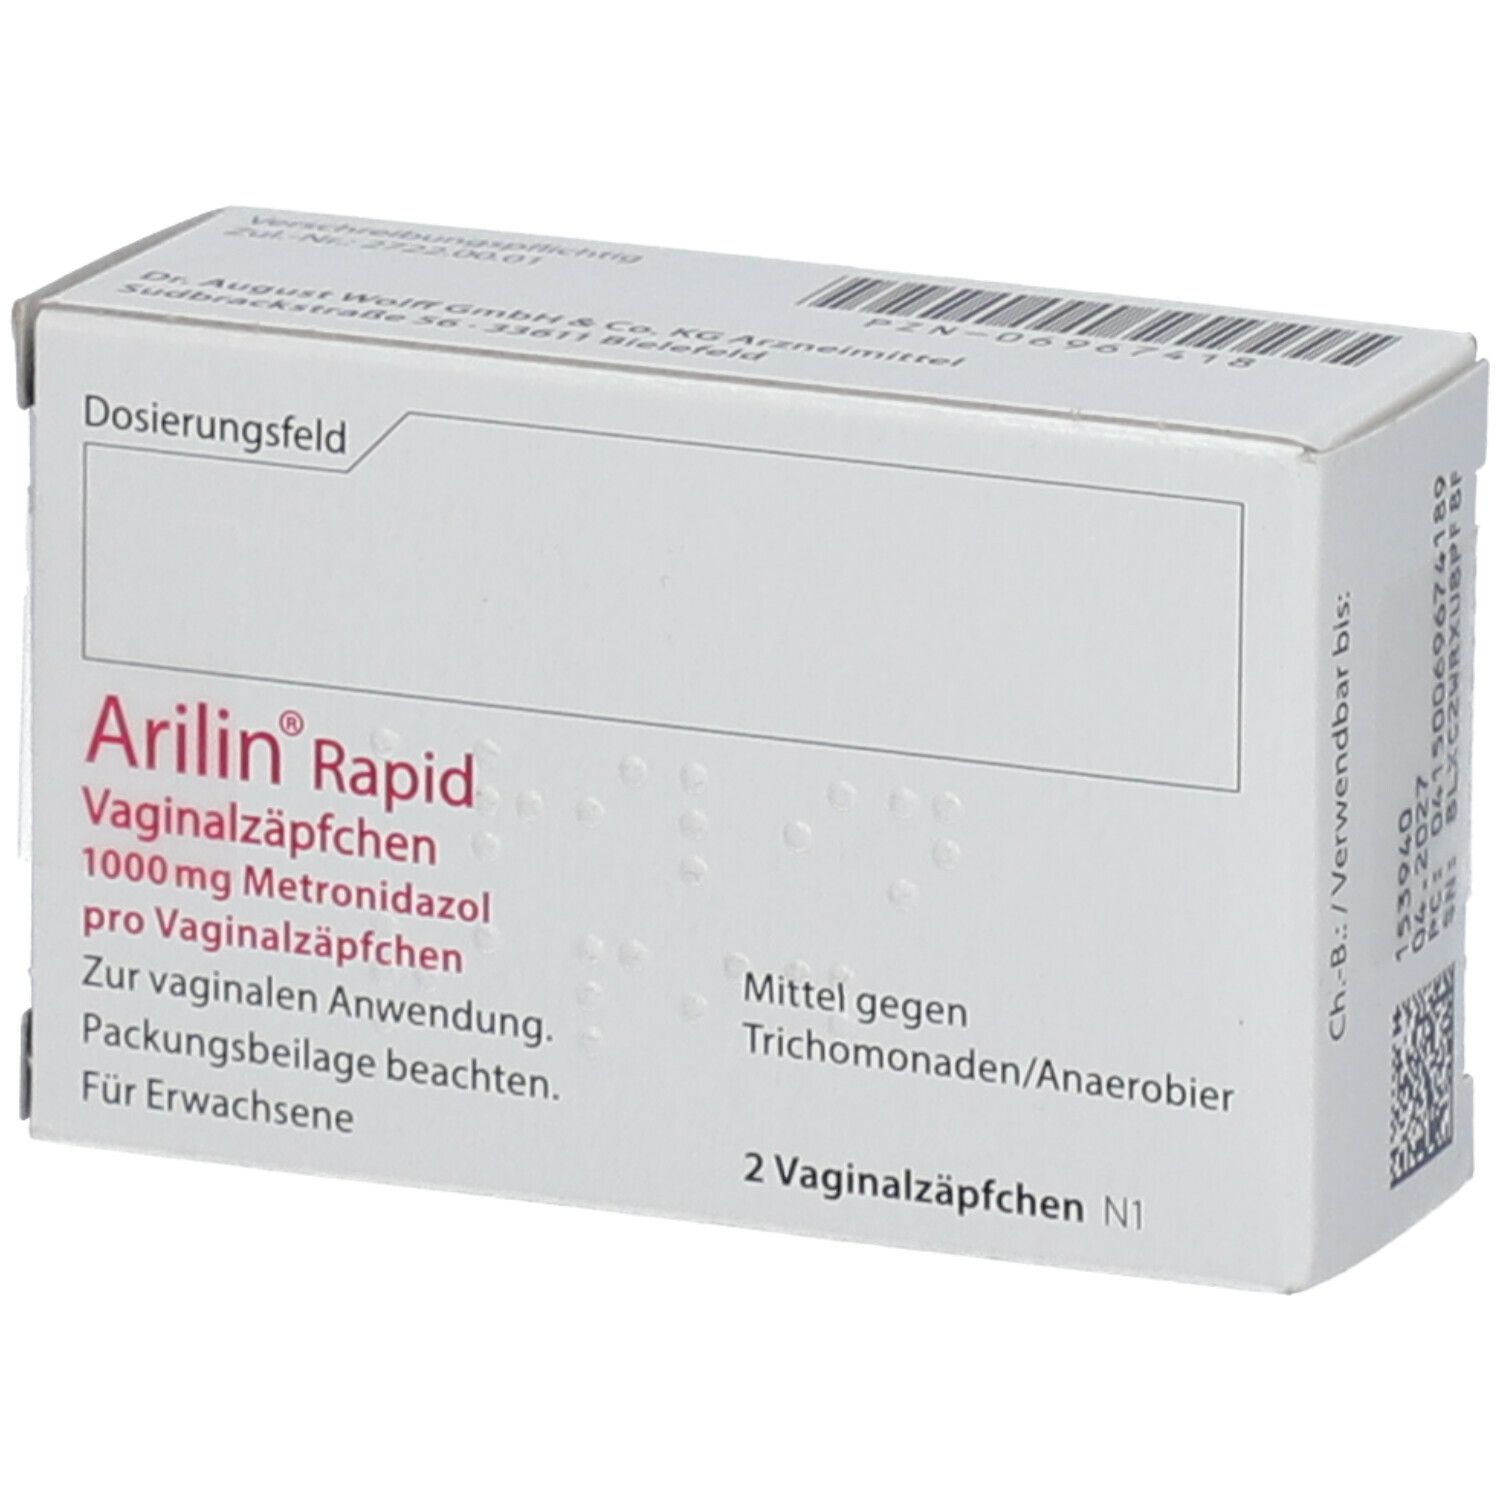 Arilin ® rapid.